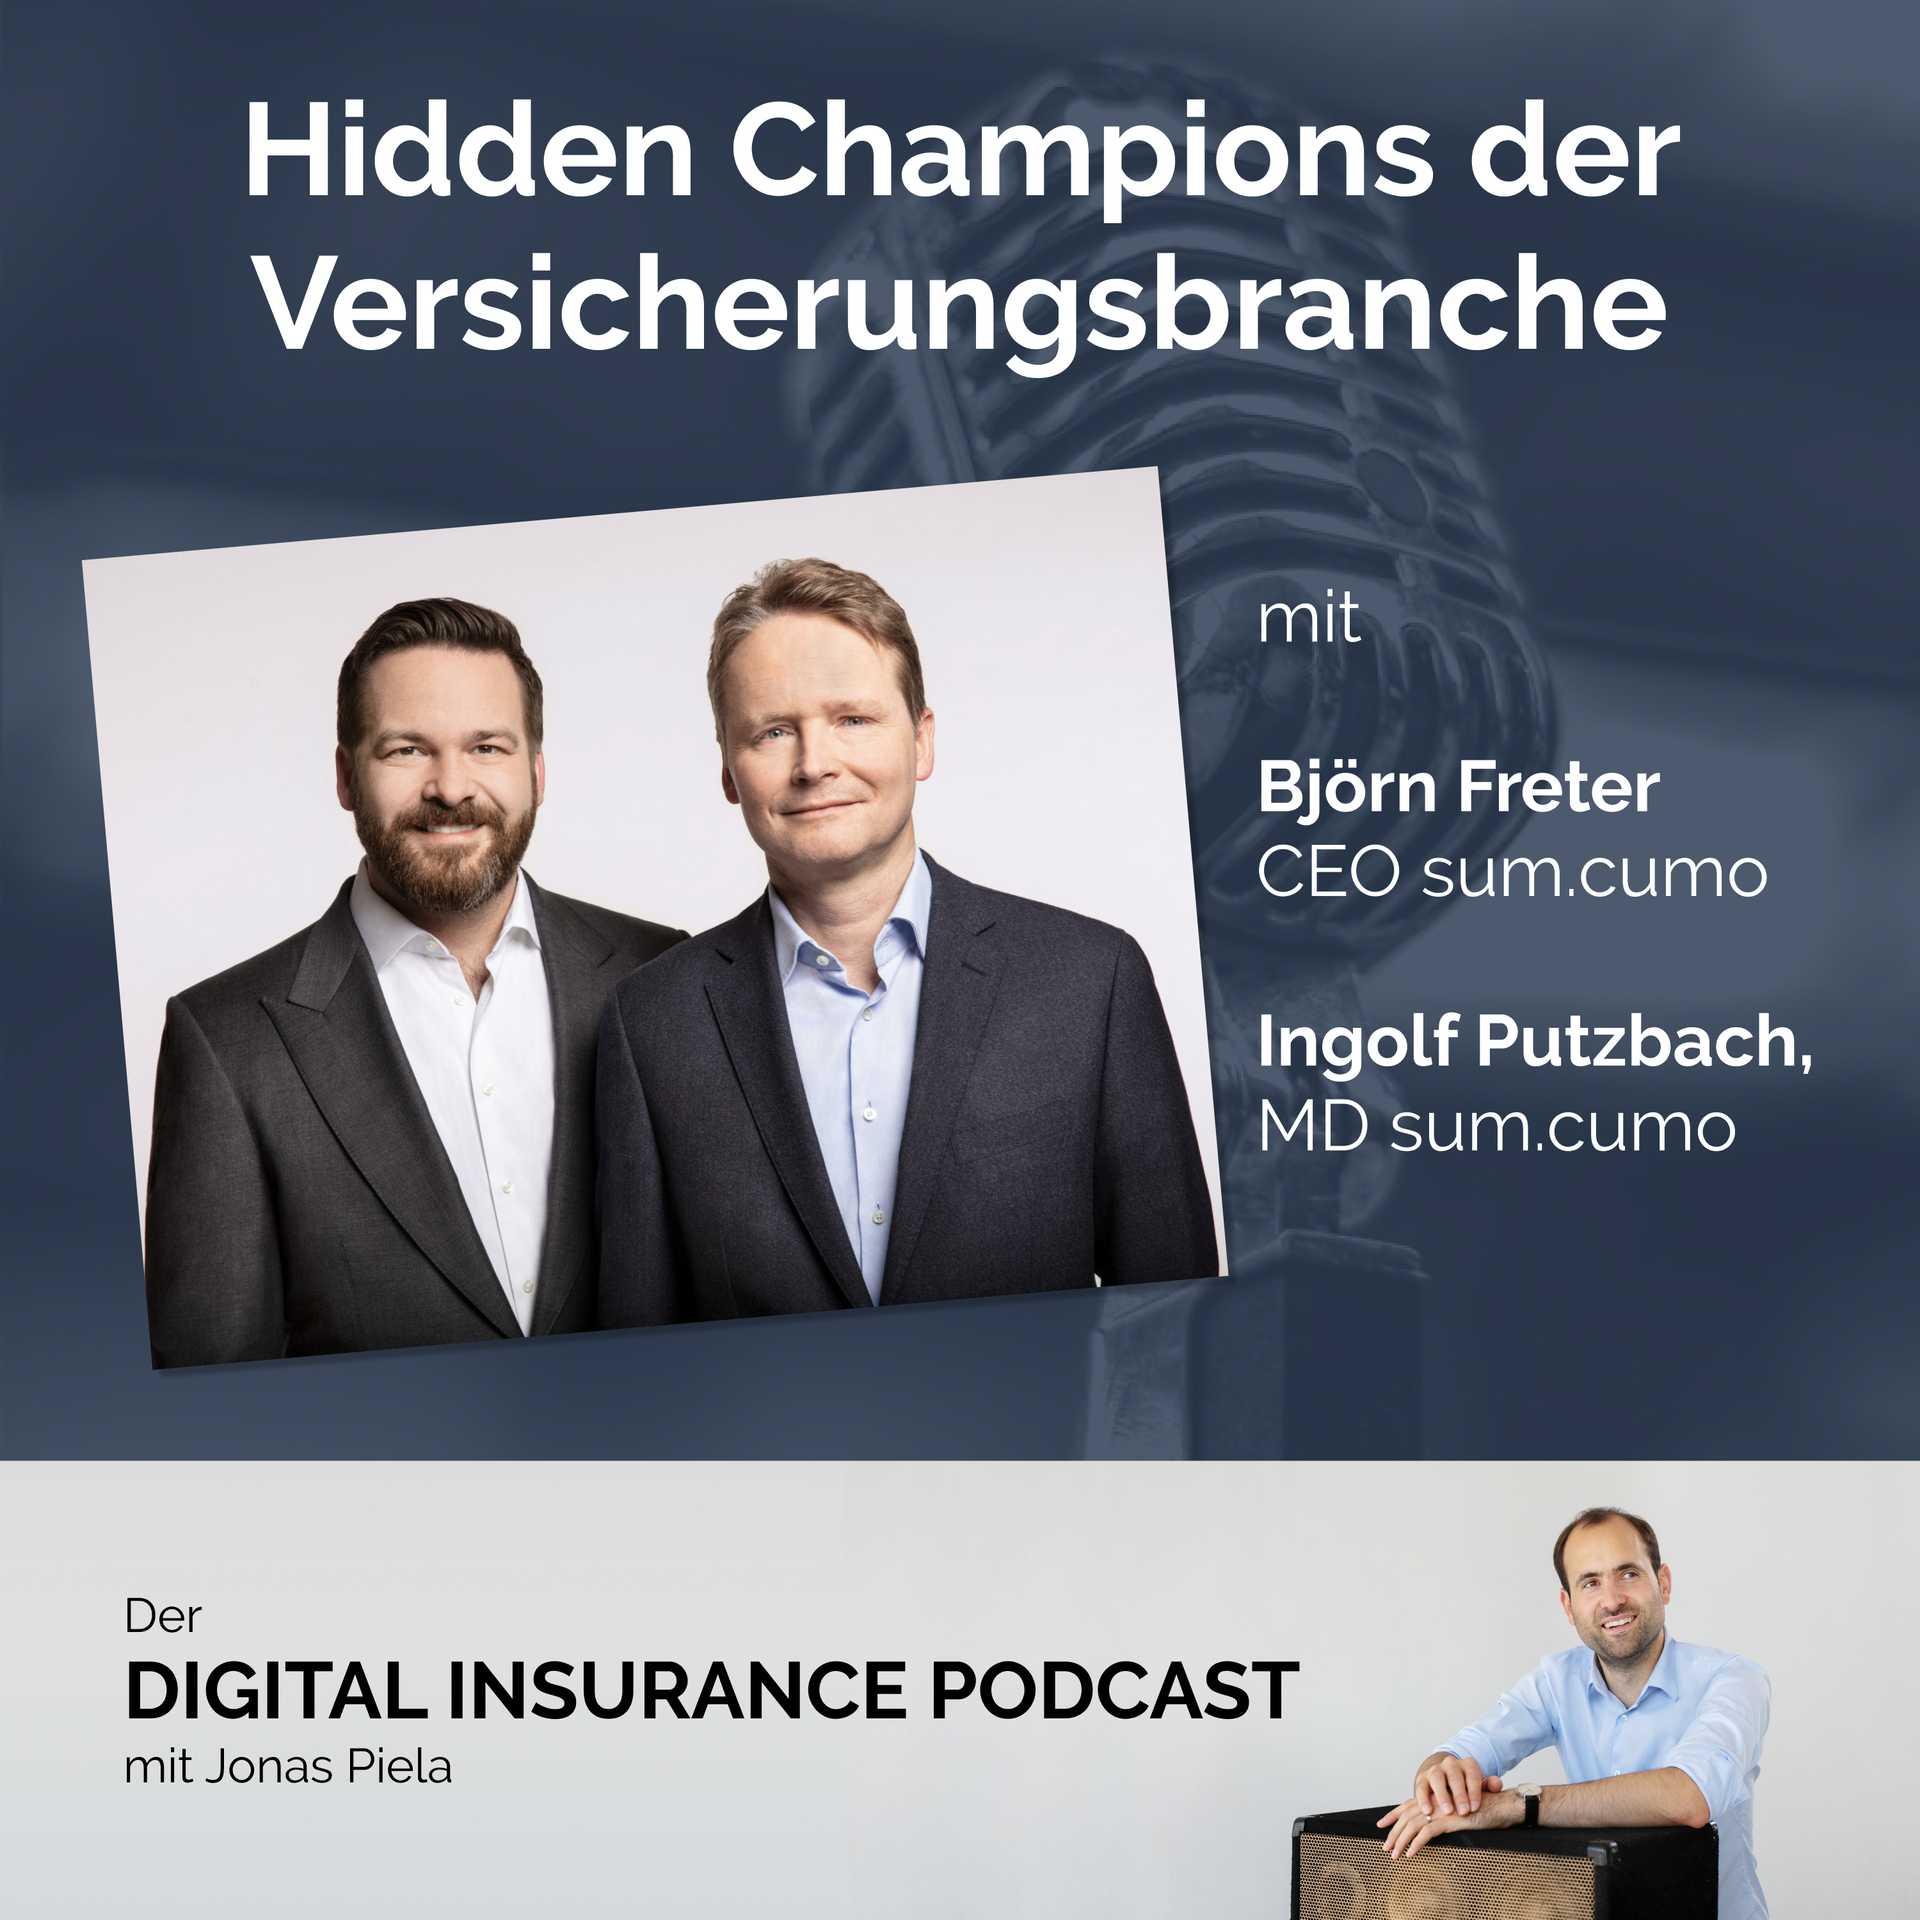 Hidden Champions der Versicherungsbranche mit Björn Freter, Ingolf Putzbach